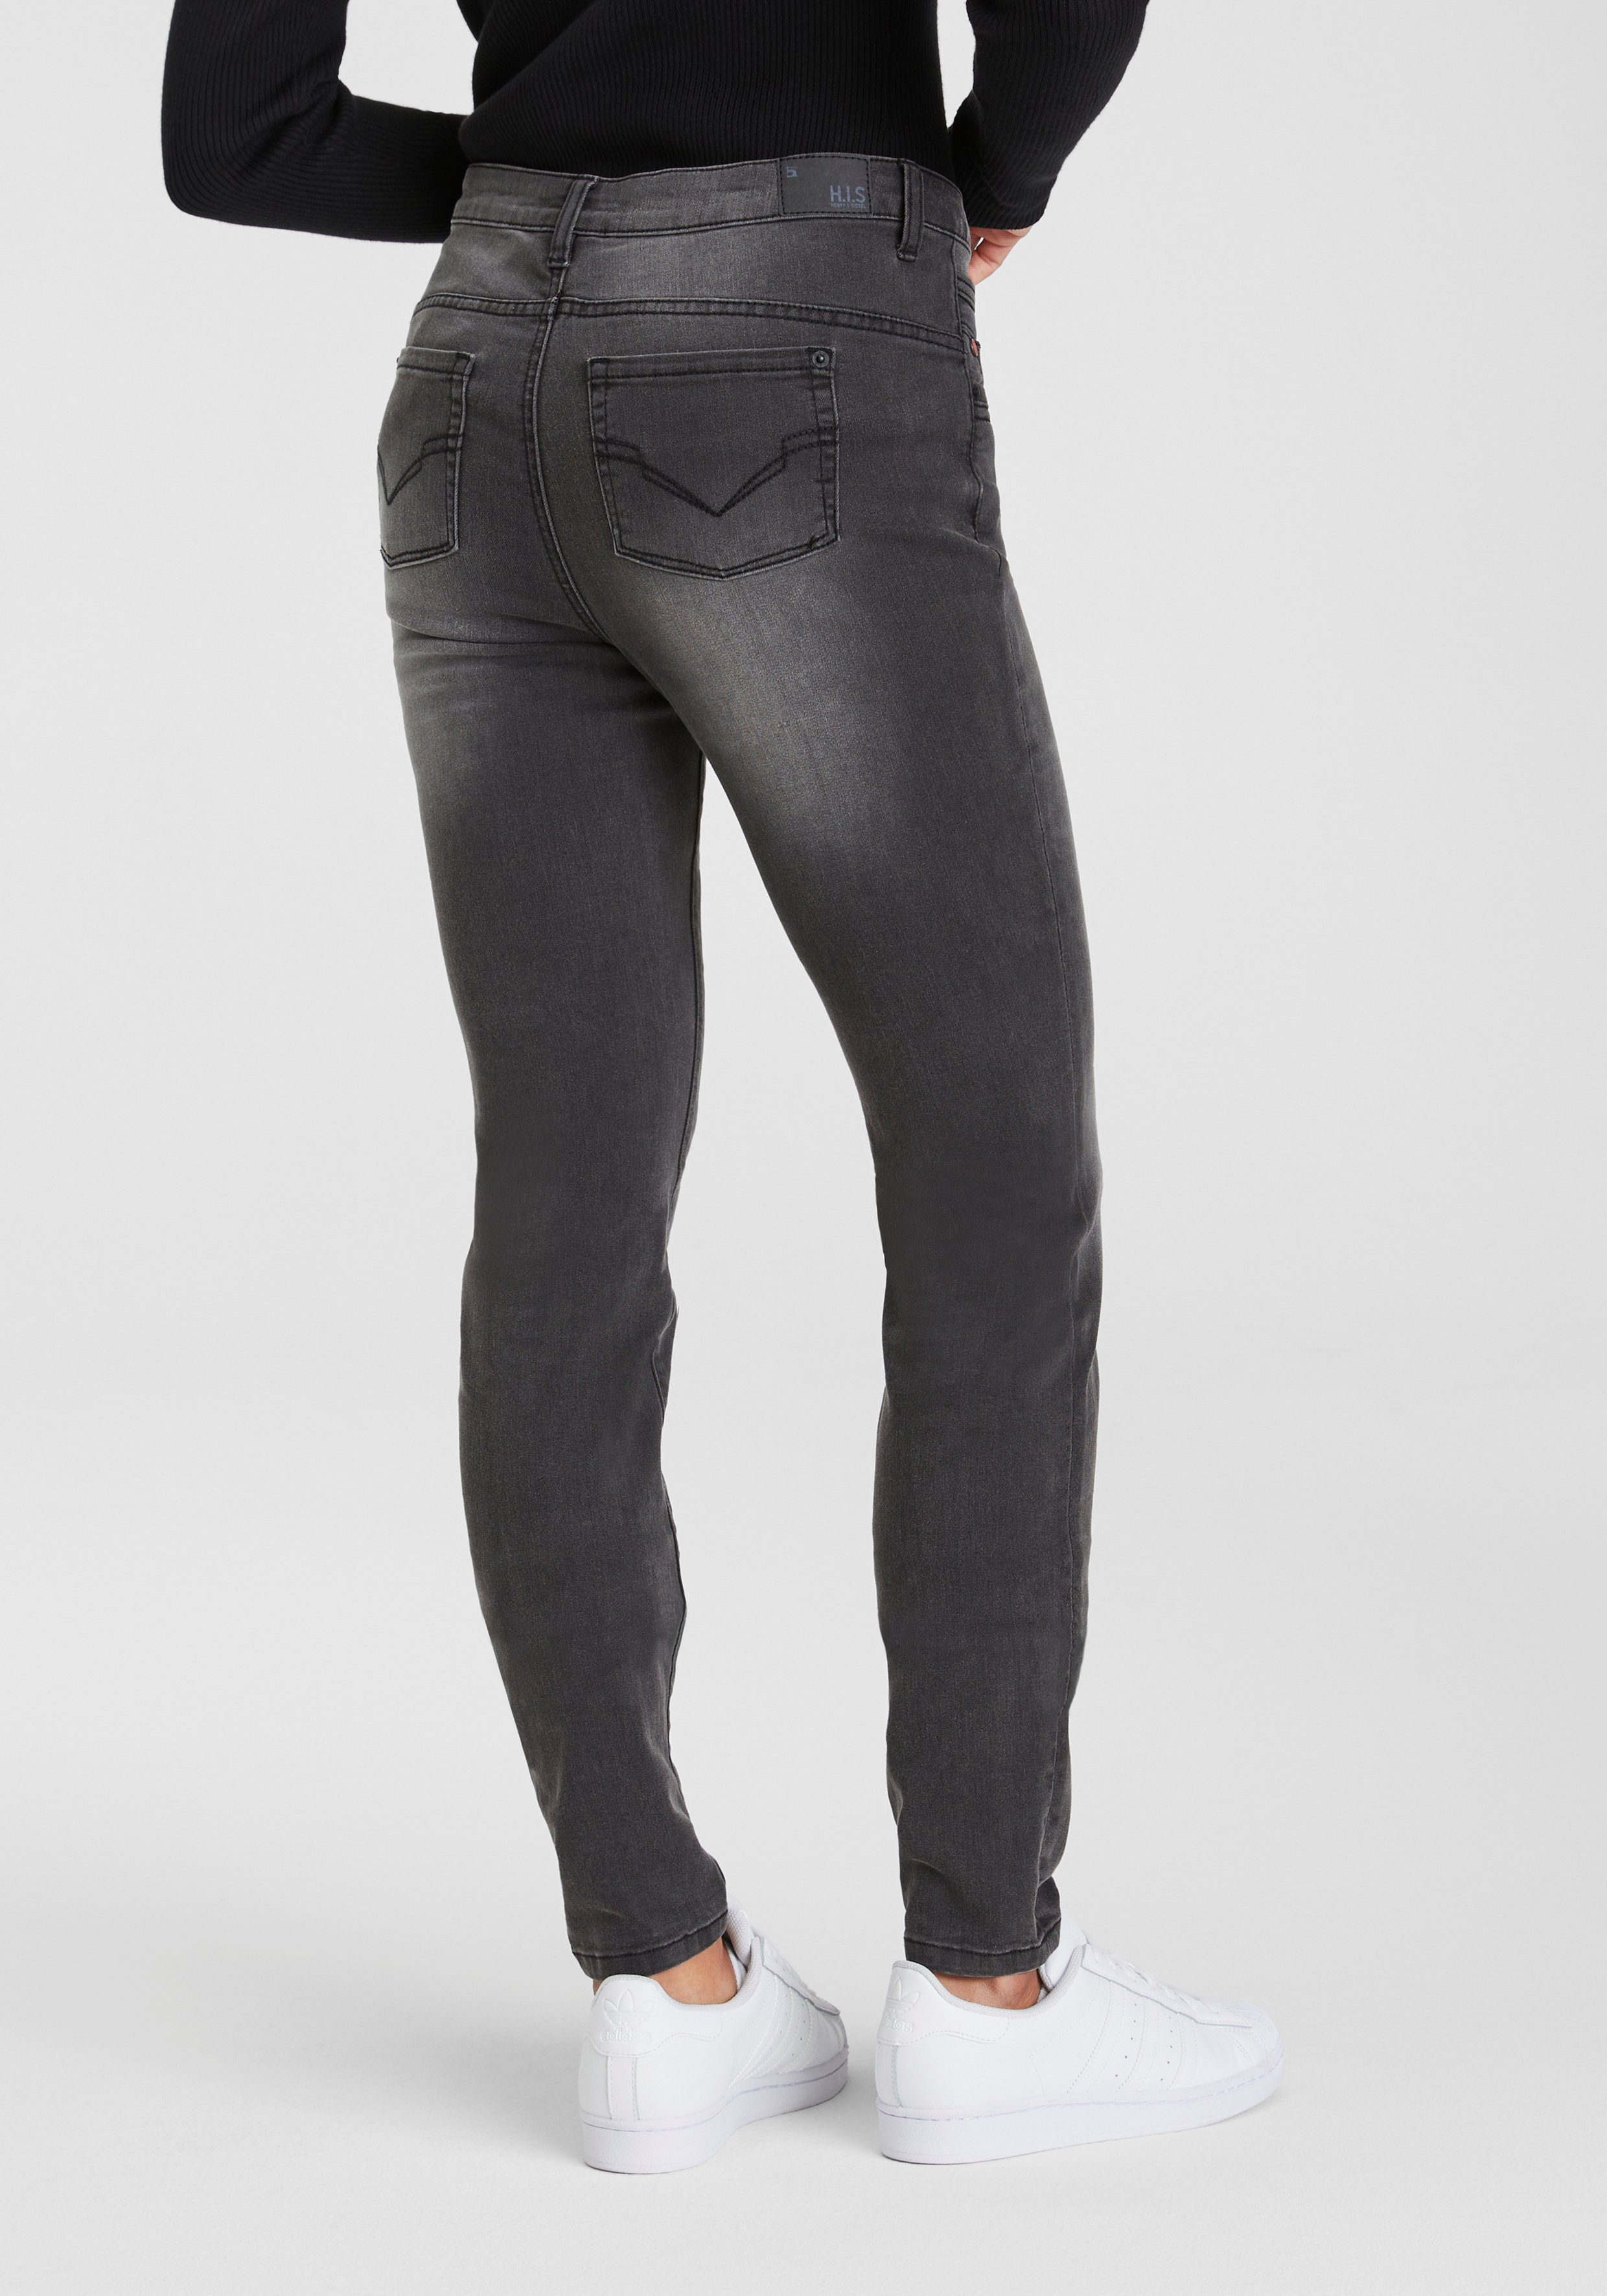 djunaHS Produktion Wash 5-Pocket-Jeans durch dark grey wassersparende Ozon H.I.S ökologische,